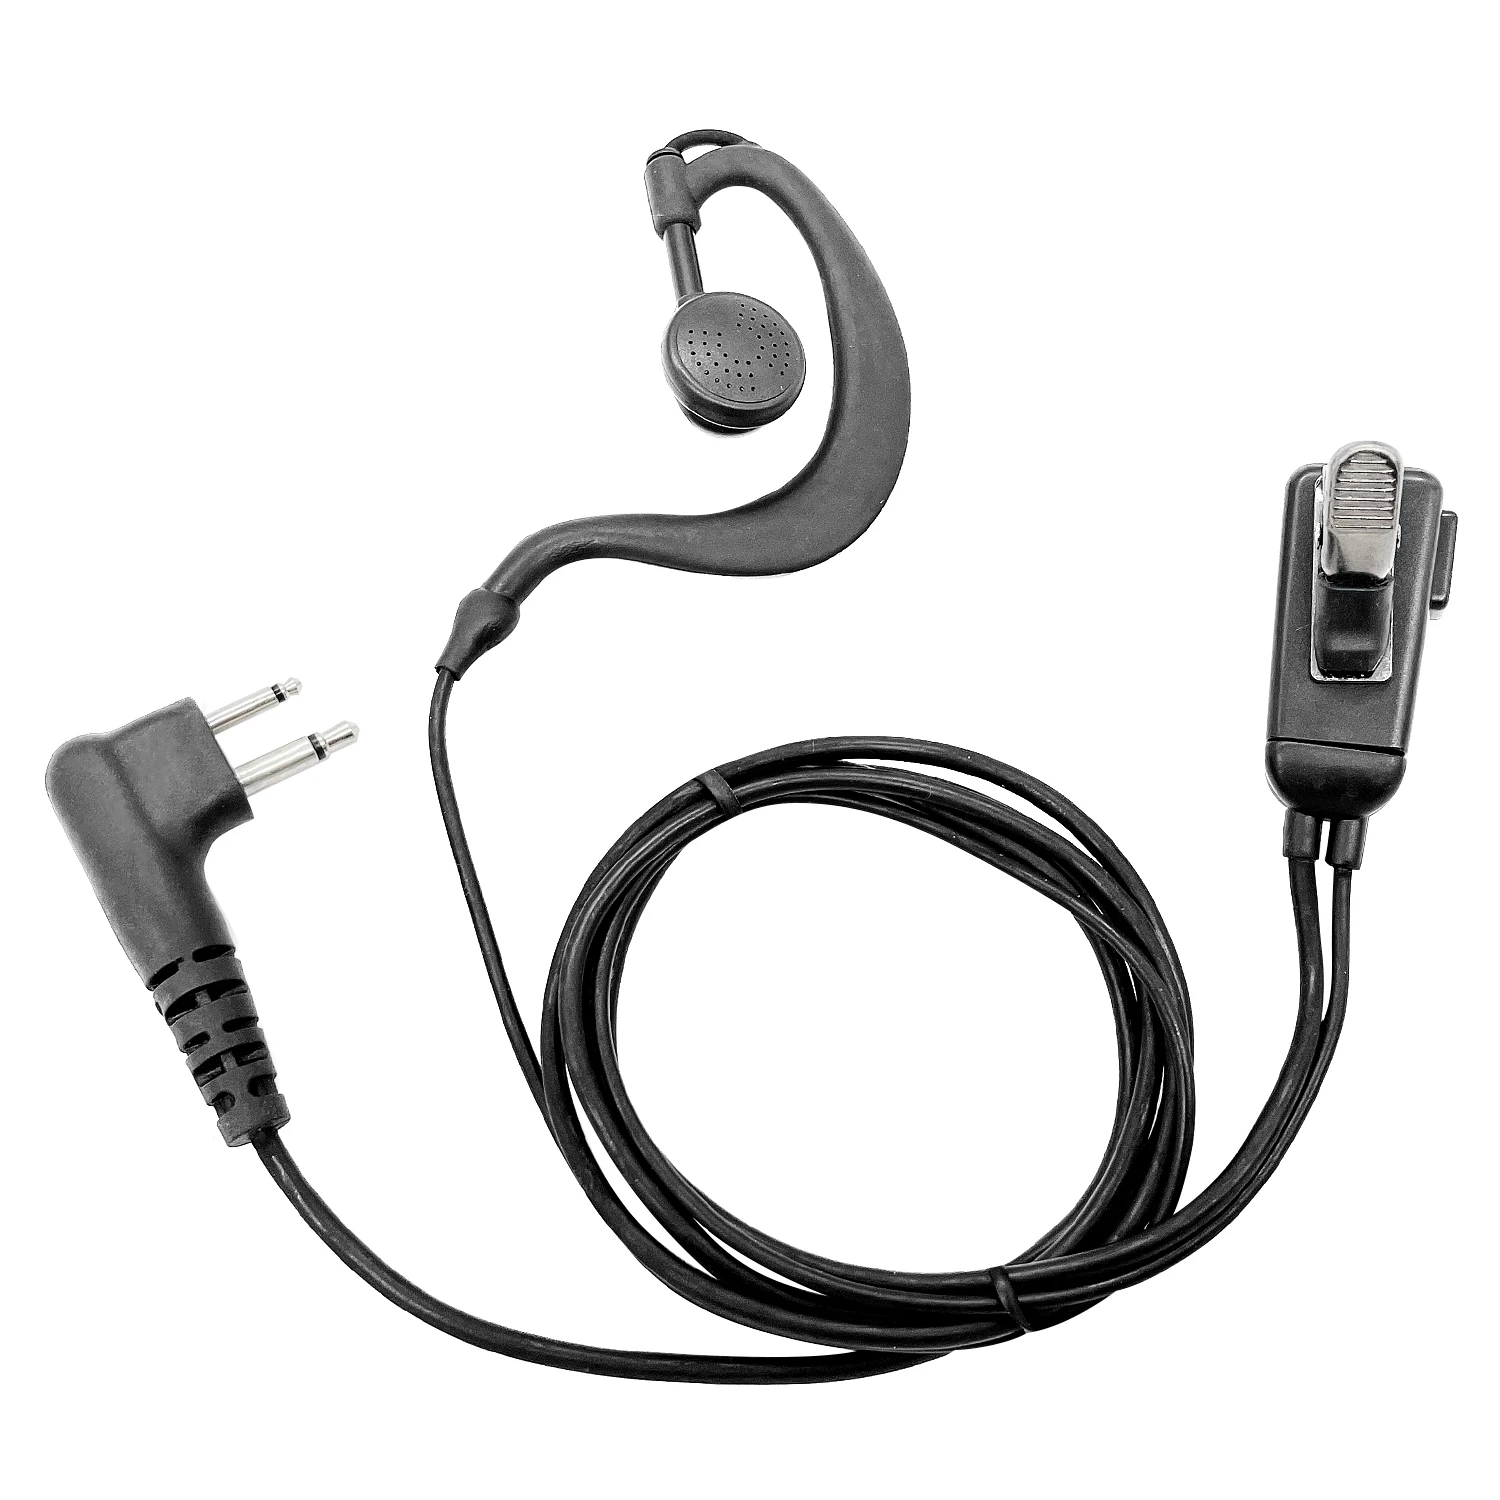 5 Pack Type G headphones walkie talkie headset Earpiece microphone for motorola CP010,CP140,GP68,EP450,DEP450,CT150,250,450 enlarge